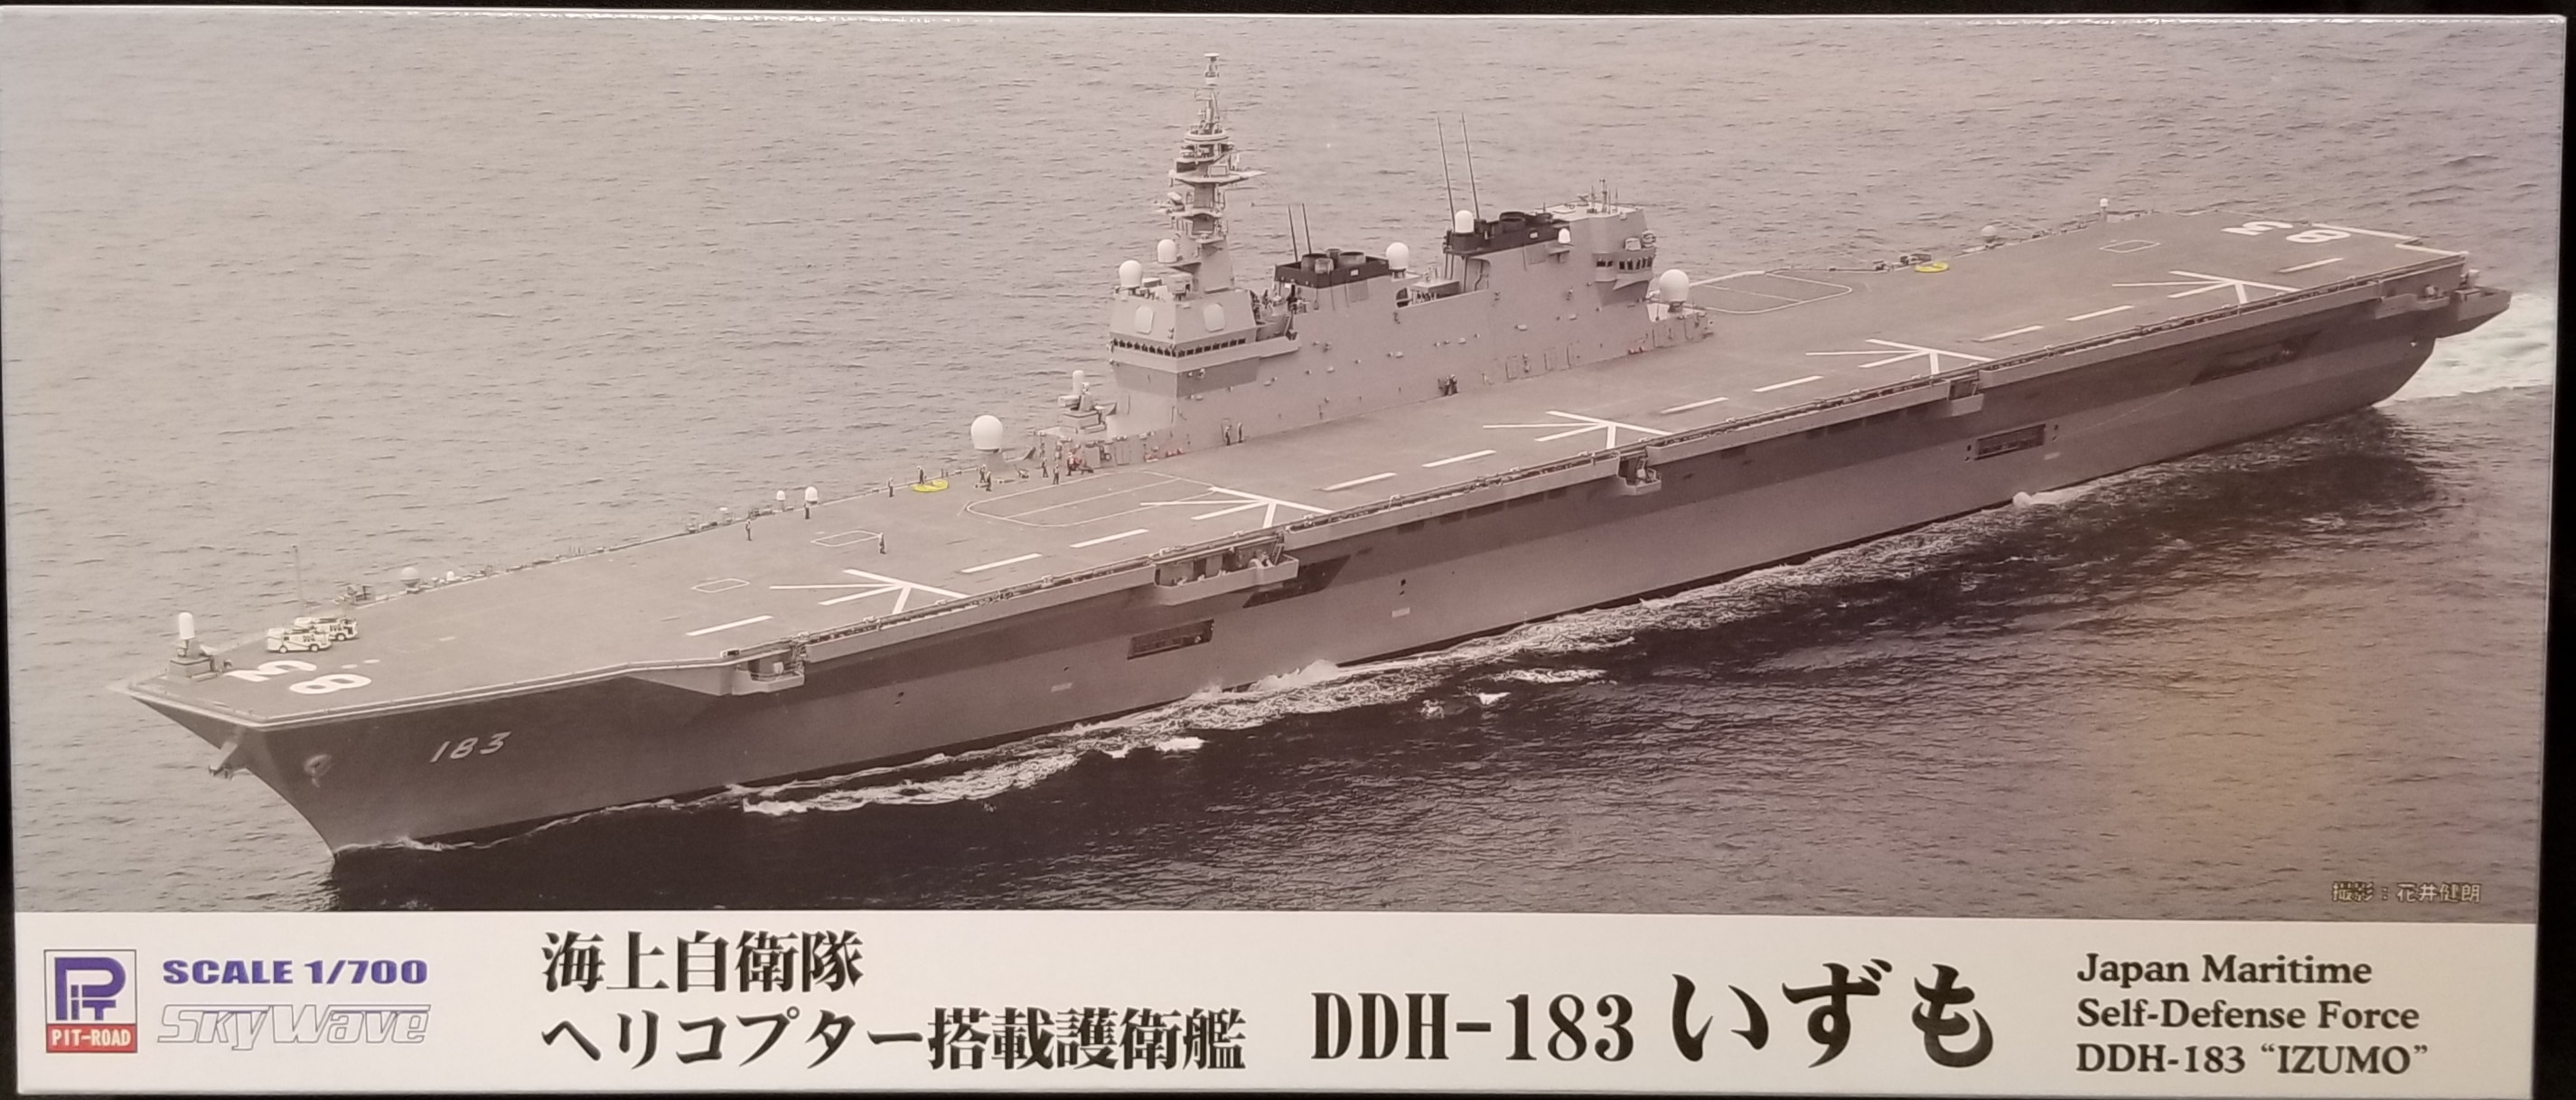 【安い激安】ピットロード JPM09 1/700 海上自衛隊 ヘリコプター搭載護衛艦 DDH-183 いずも 完成品